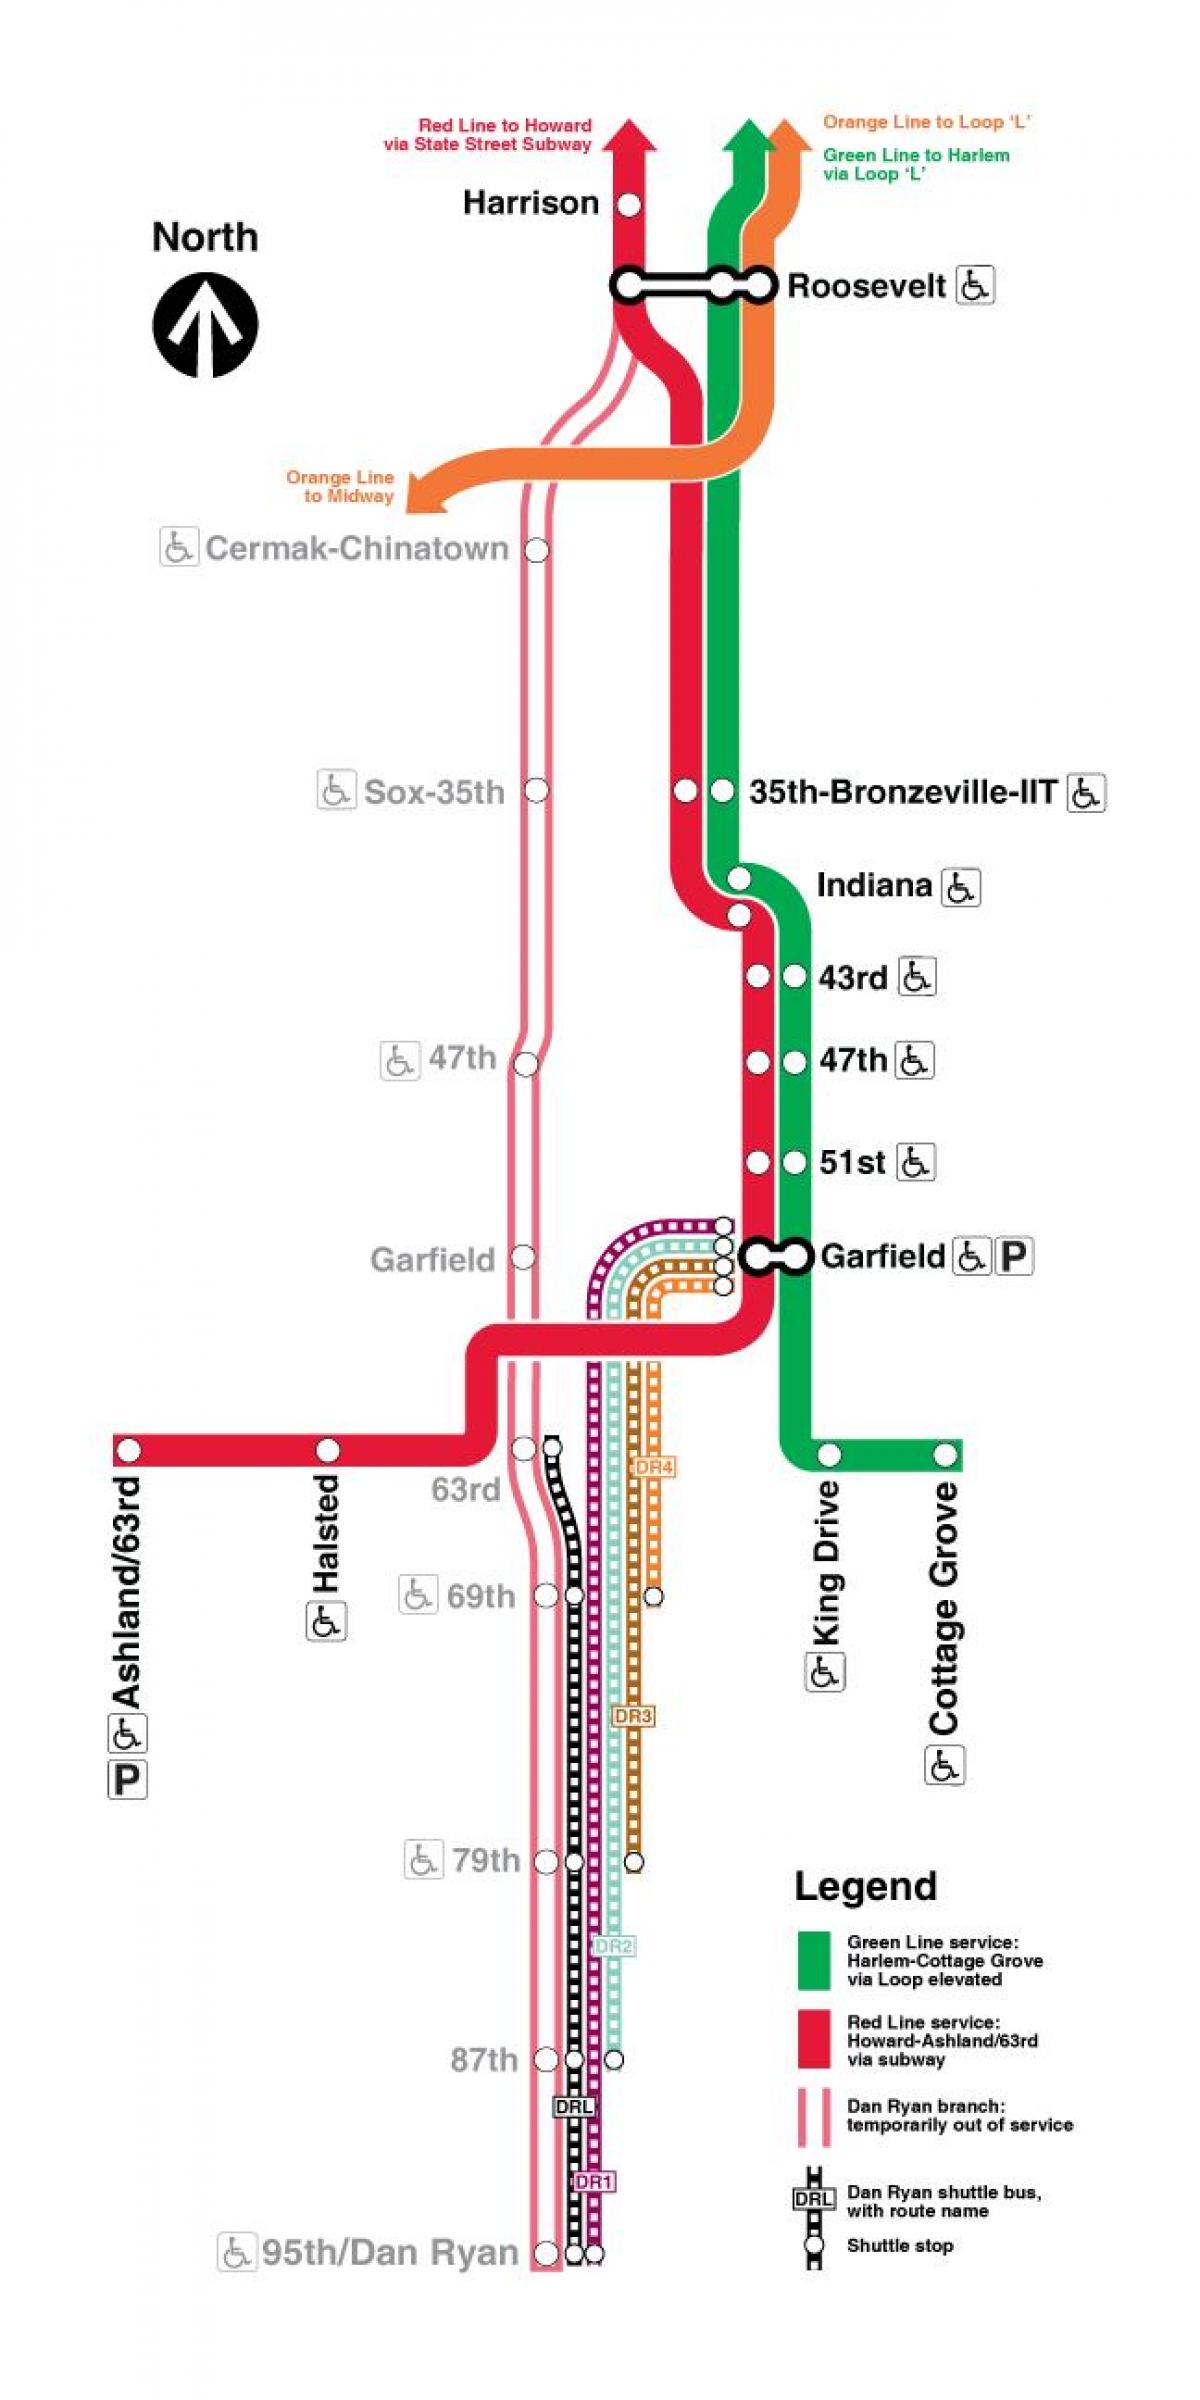 Čikāgā vilcienu kartē sarkanā līnija